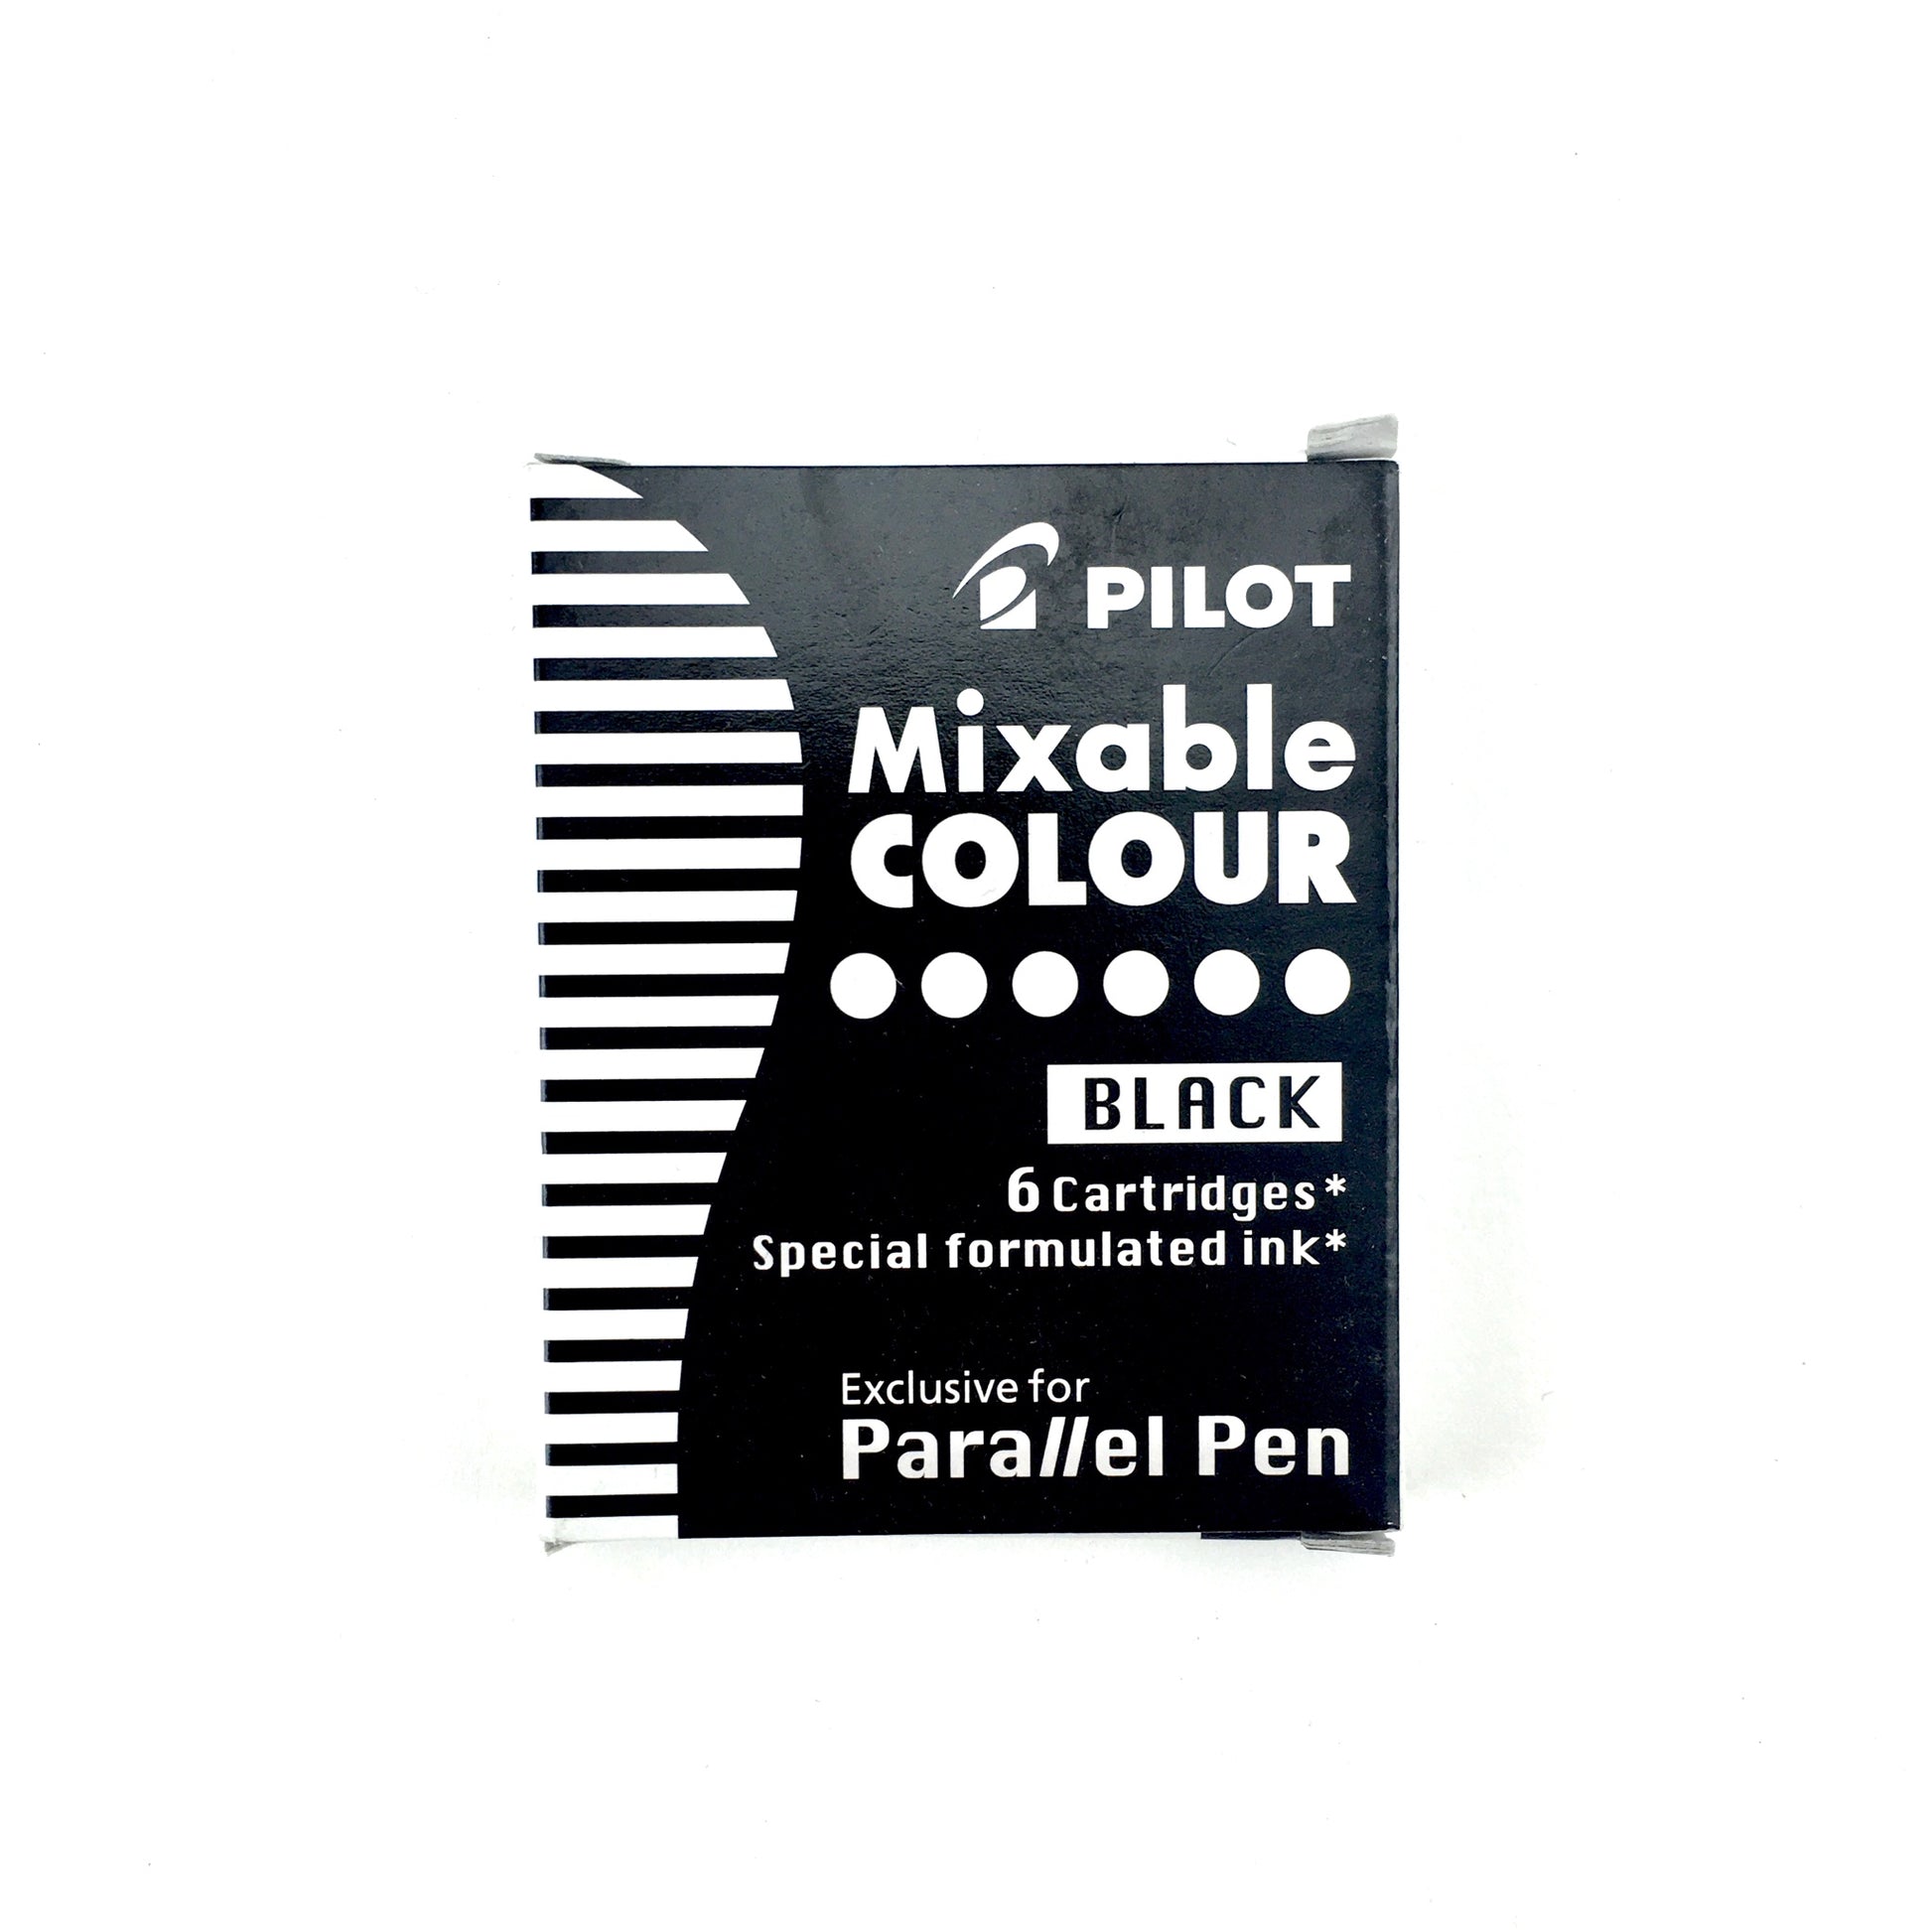 Pilot Mixable Colour Ink Cartridges - Black by Pilot - K. A. Artist Shop